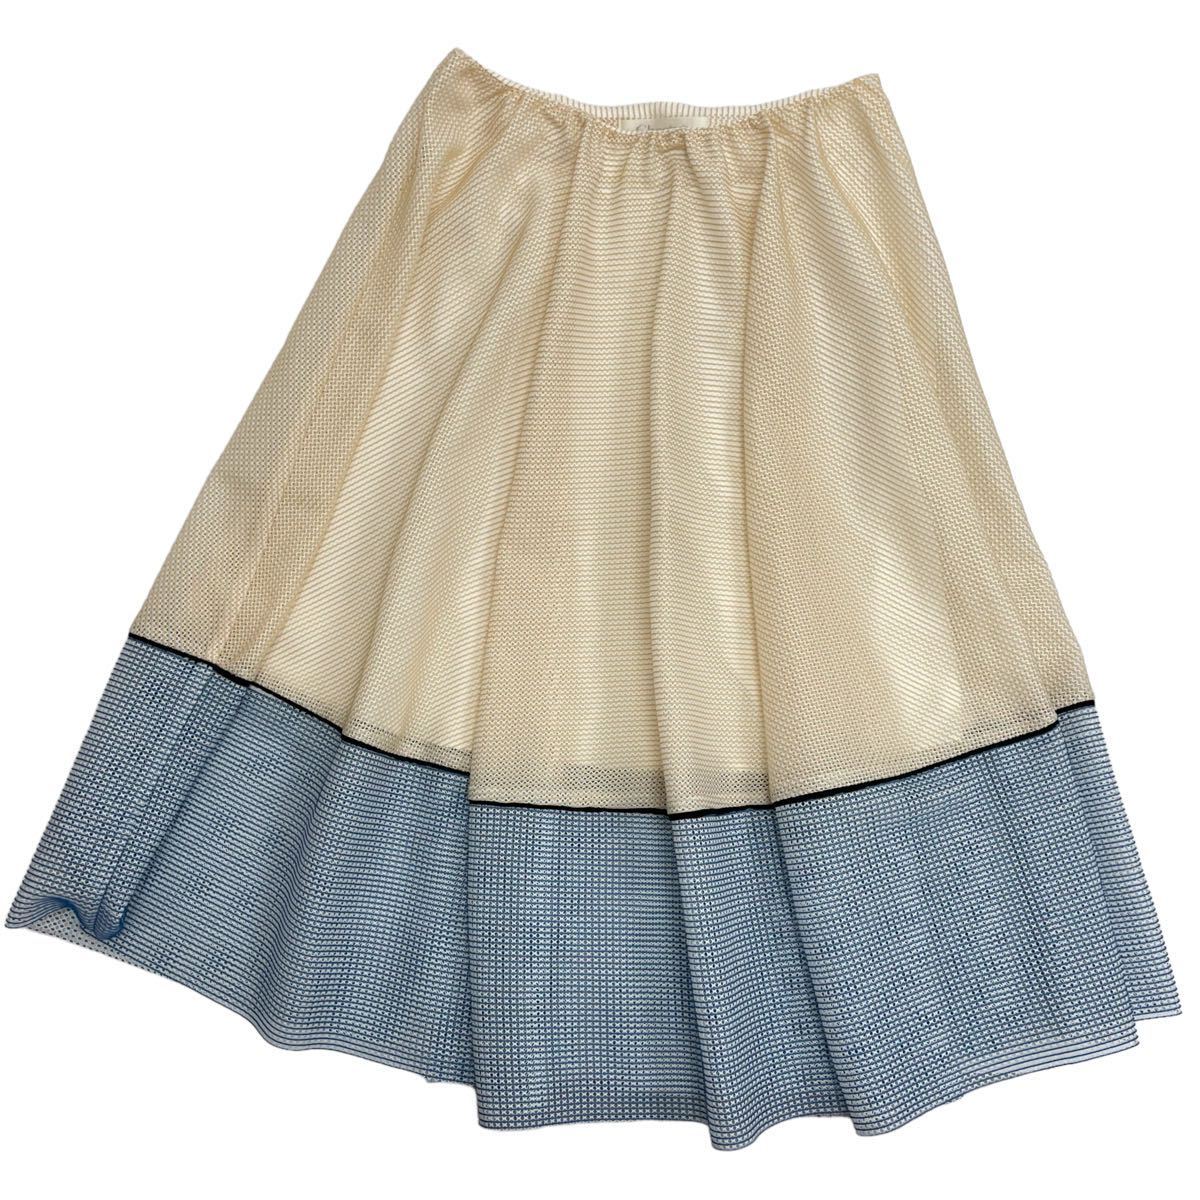 Chesty / Chesty женский длинная юбка сетка юбка flair юбка бежевый бледно-голубой весна предмет лето предмет M размер соответствует O-1136